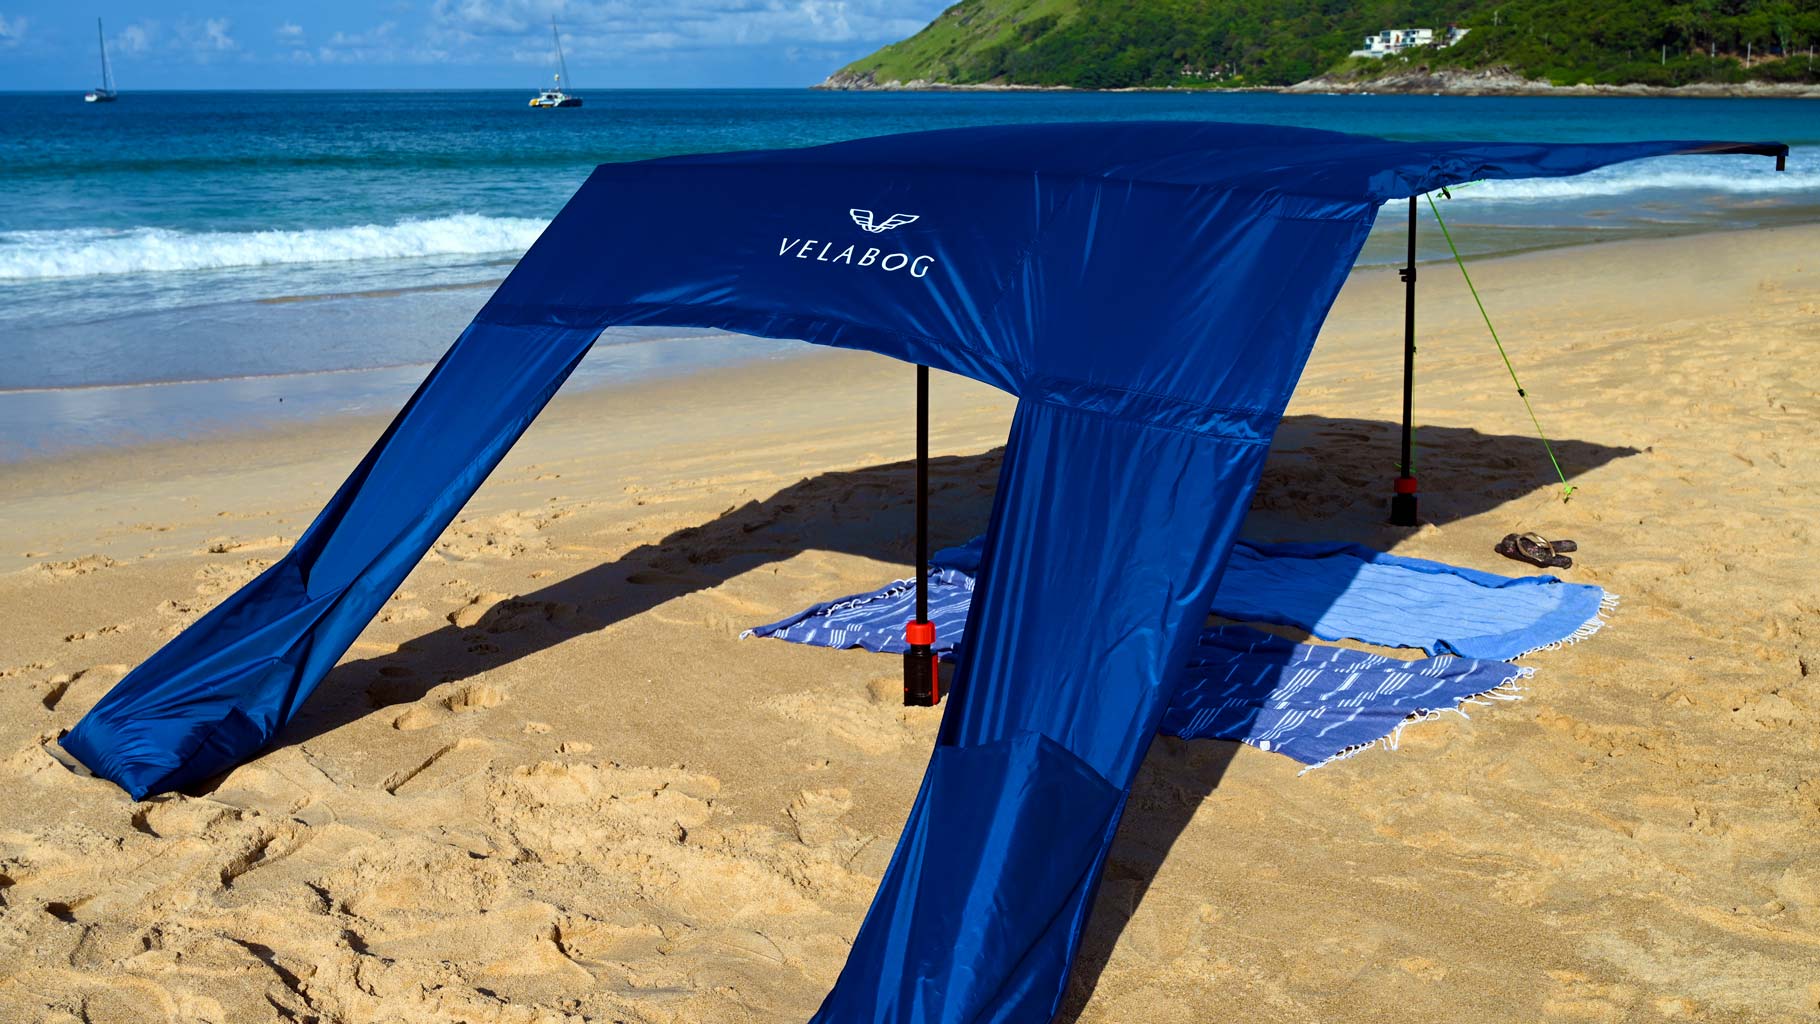 Żagiel słoneczny namiot plażowy Velabog Breeze, ciemnoniebieski, w zestawie rozszerzonym ustawionym na plaży z porywistym wiatrem. Najlepsze zadaszenie na plażę. Żagiel słoneczny, parasol plażowy i namiot plażowy w jednym. Zapewnia dużo cienia. Stosowalny przy każdym wietrze:słabym, silnym lub porywistym. Widok od tyłu.